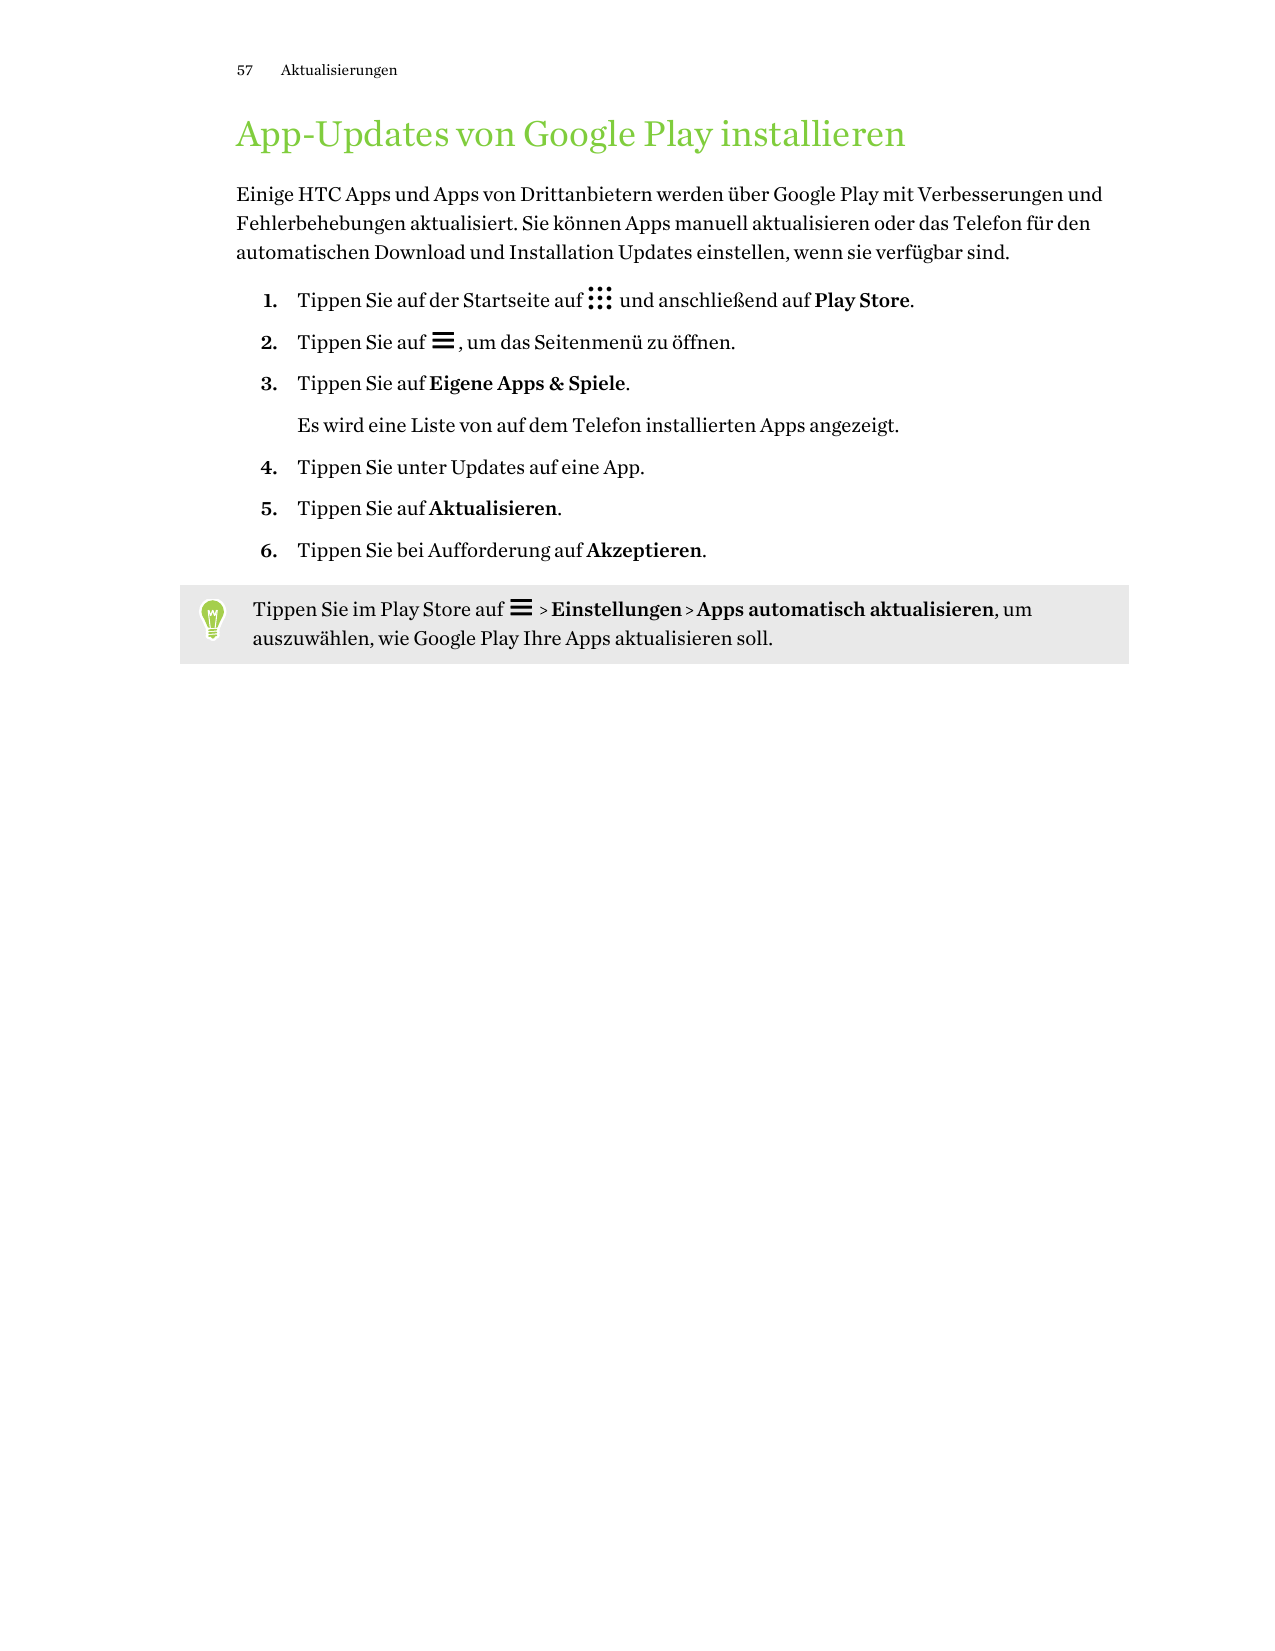 57AktualisierungenApp-Updates von Google Play installierenEinige HTC Apps und Apps von Drittanbietern werden über Google Play mi